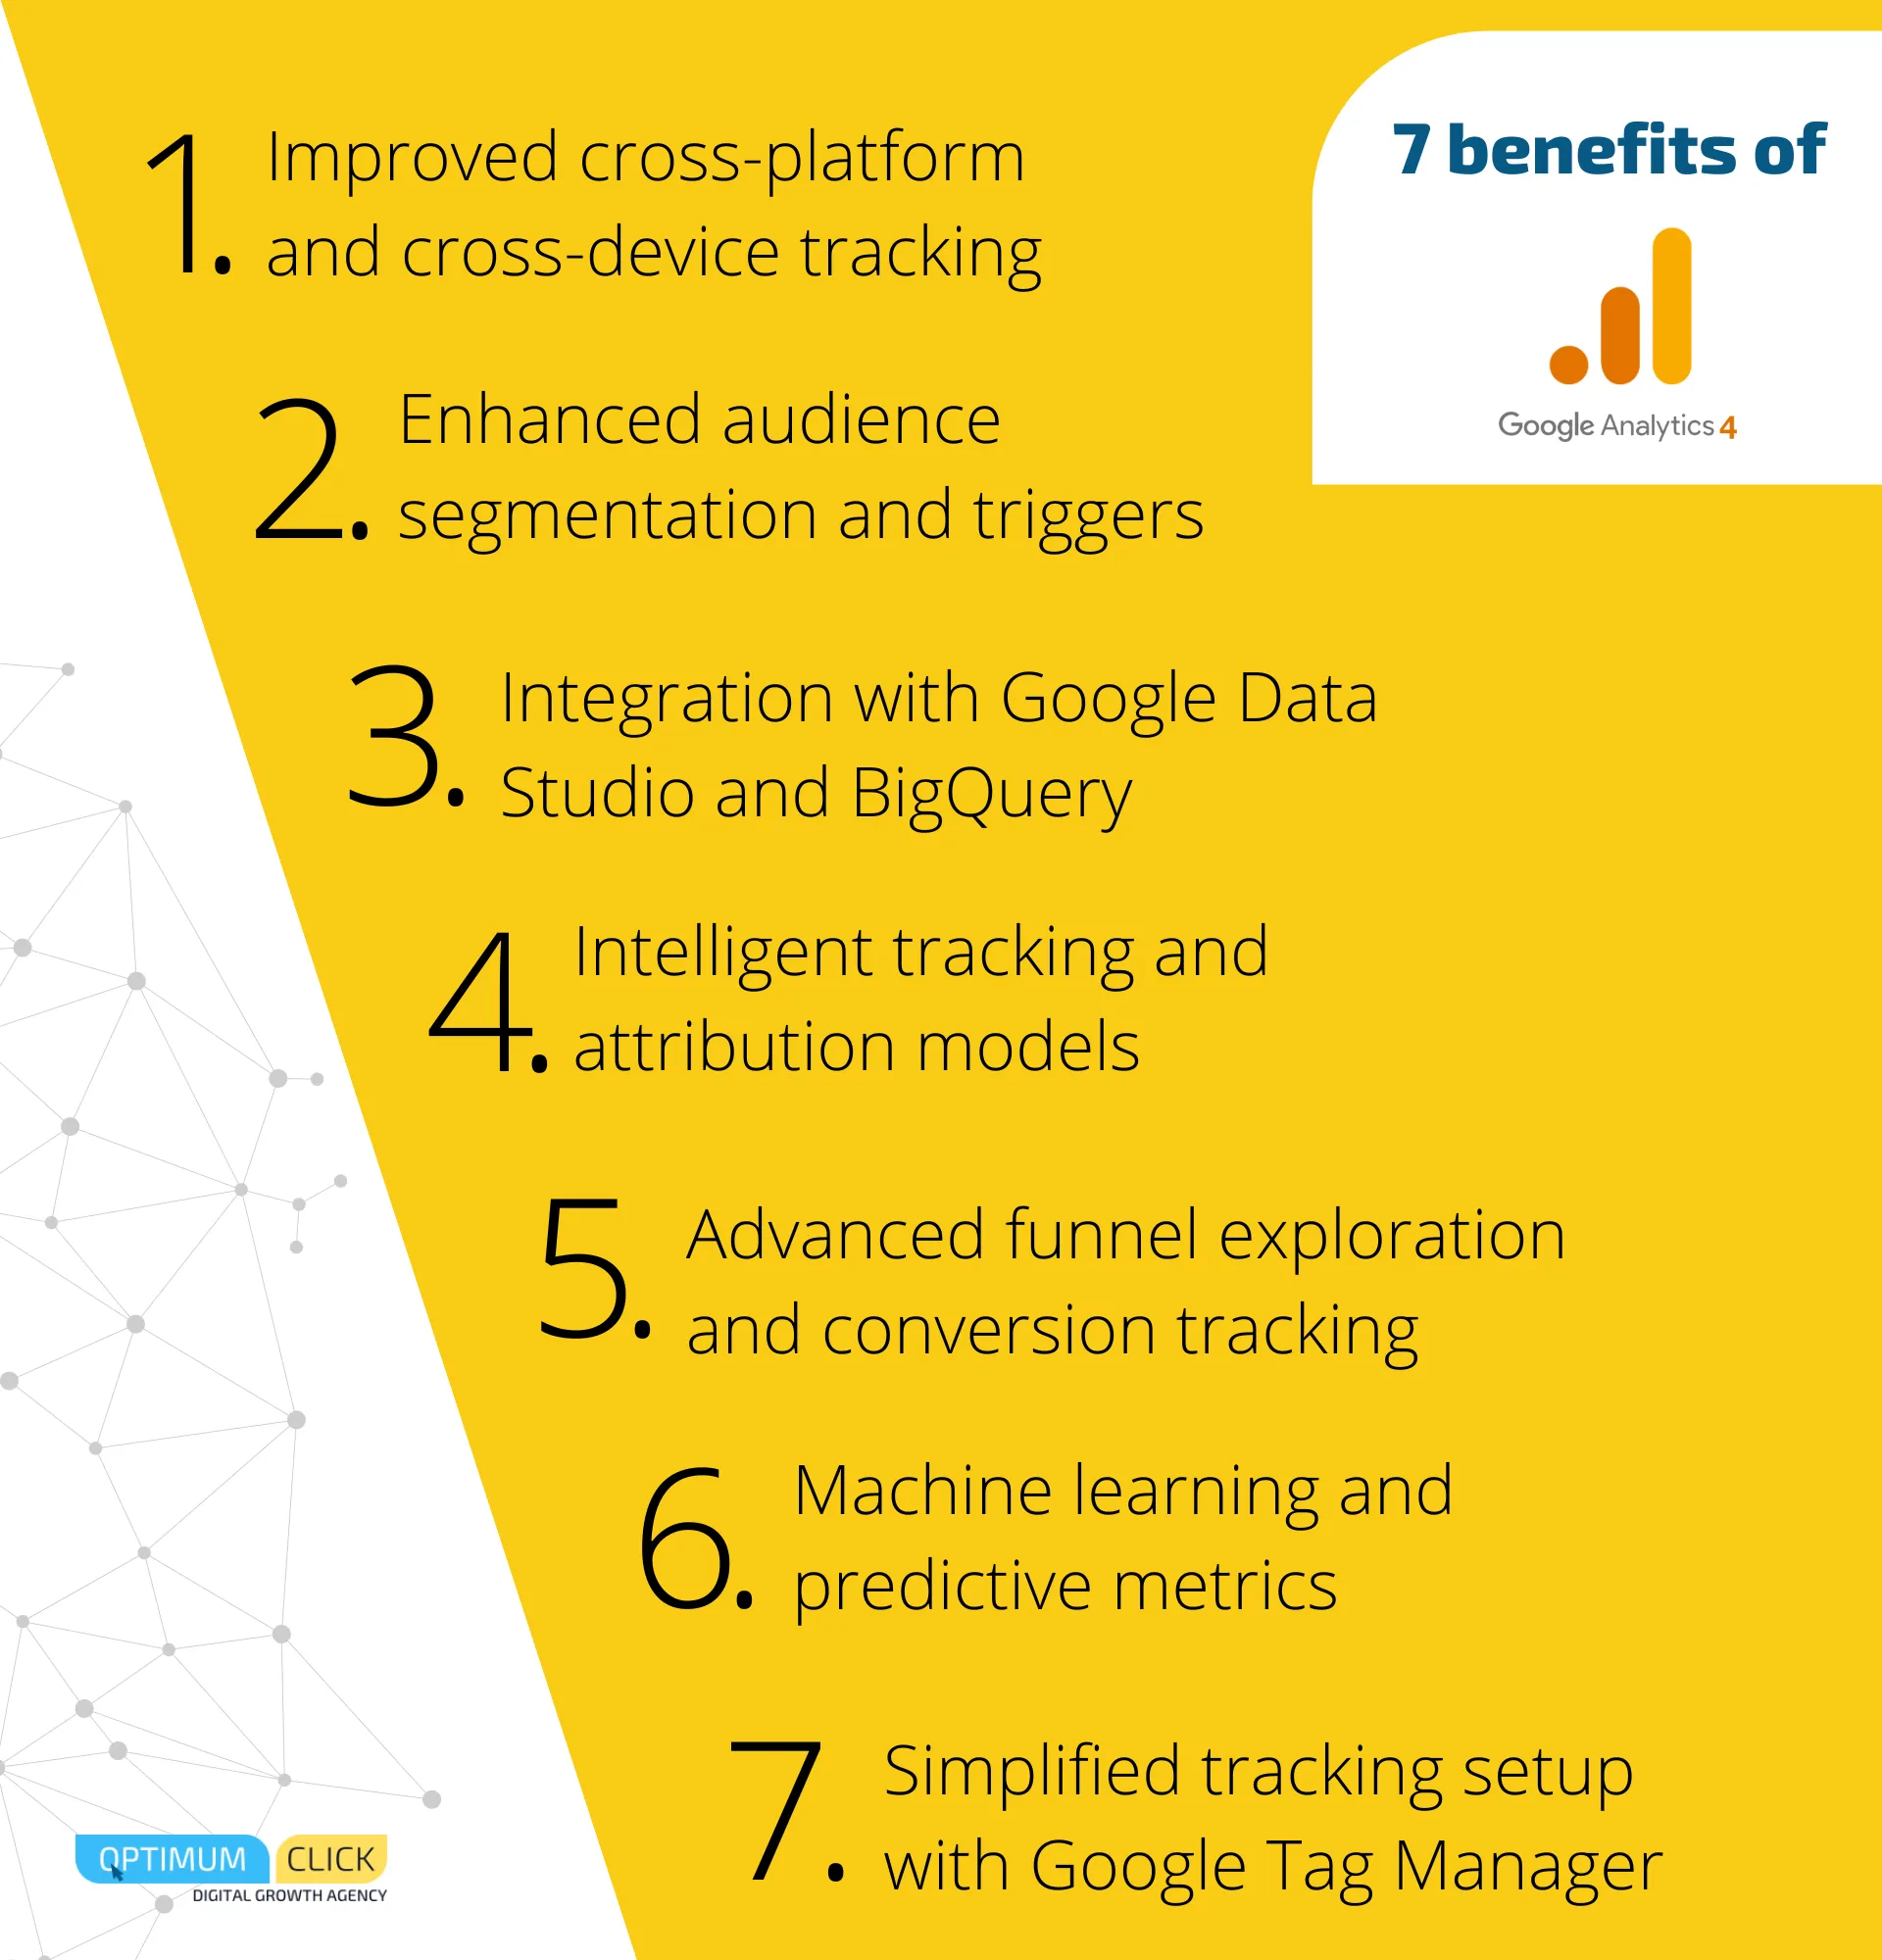 Benefits of Google Analytics 4 (GA4)